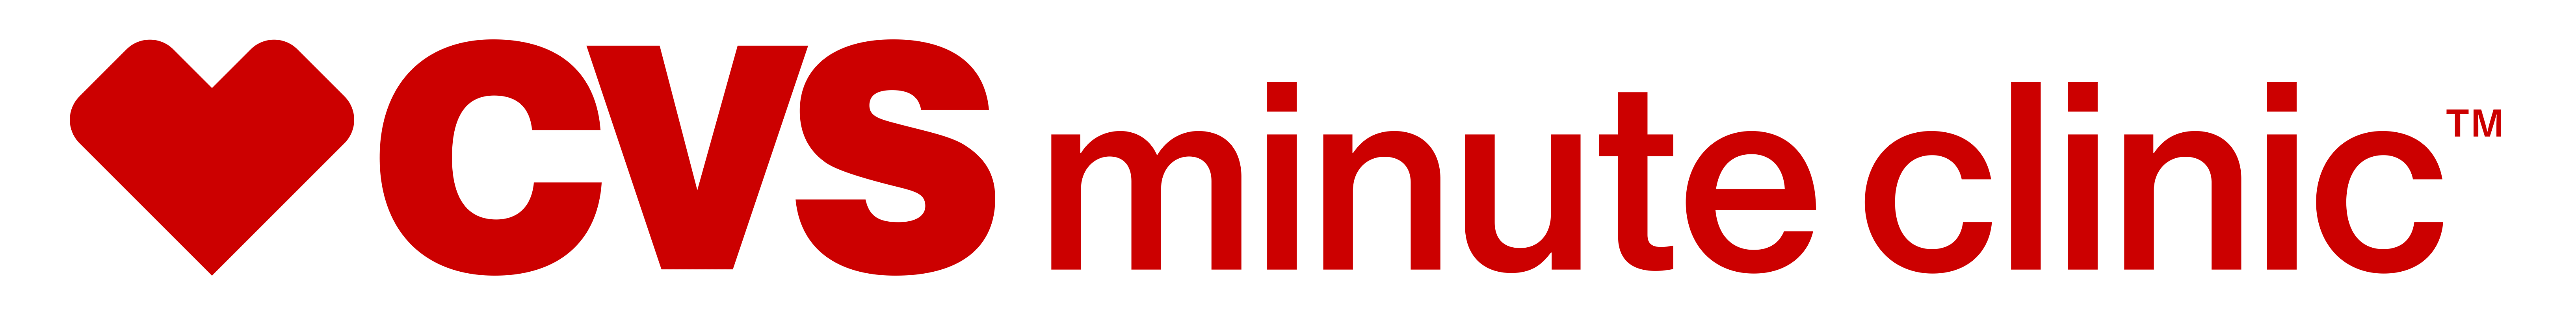 minuteclinic-logo